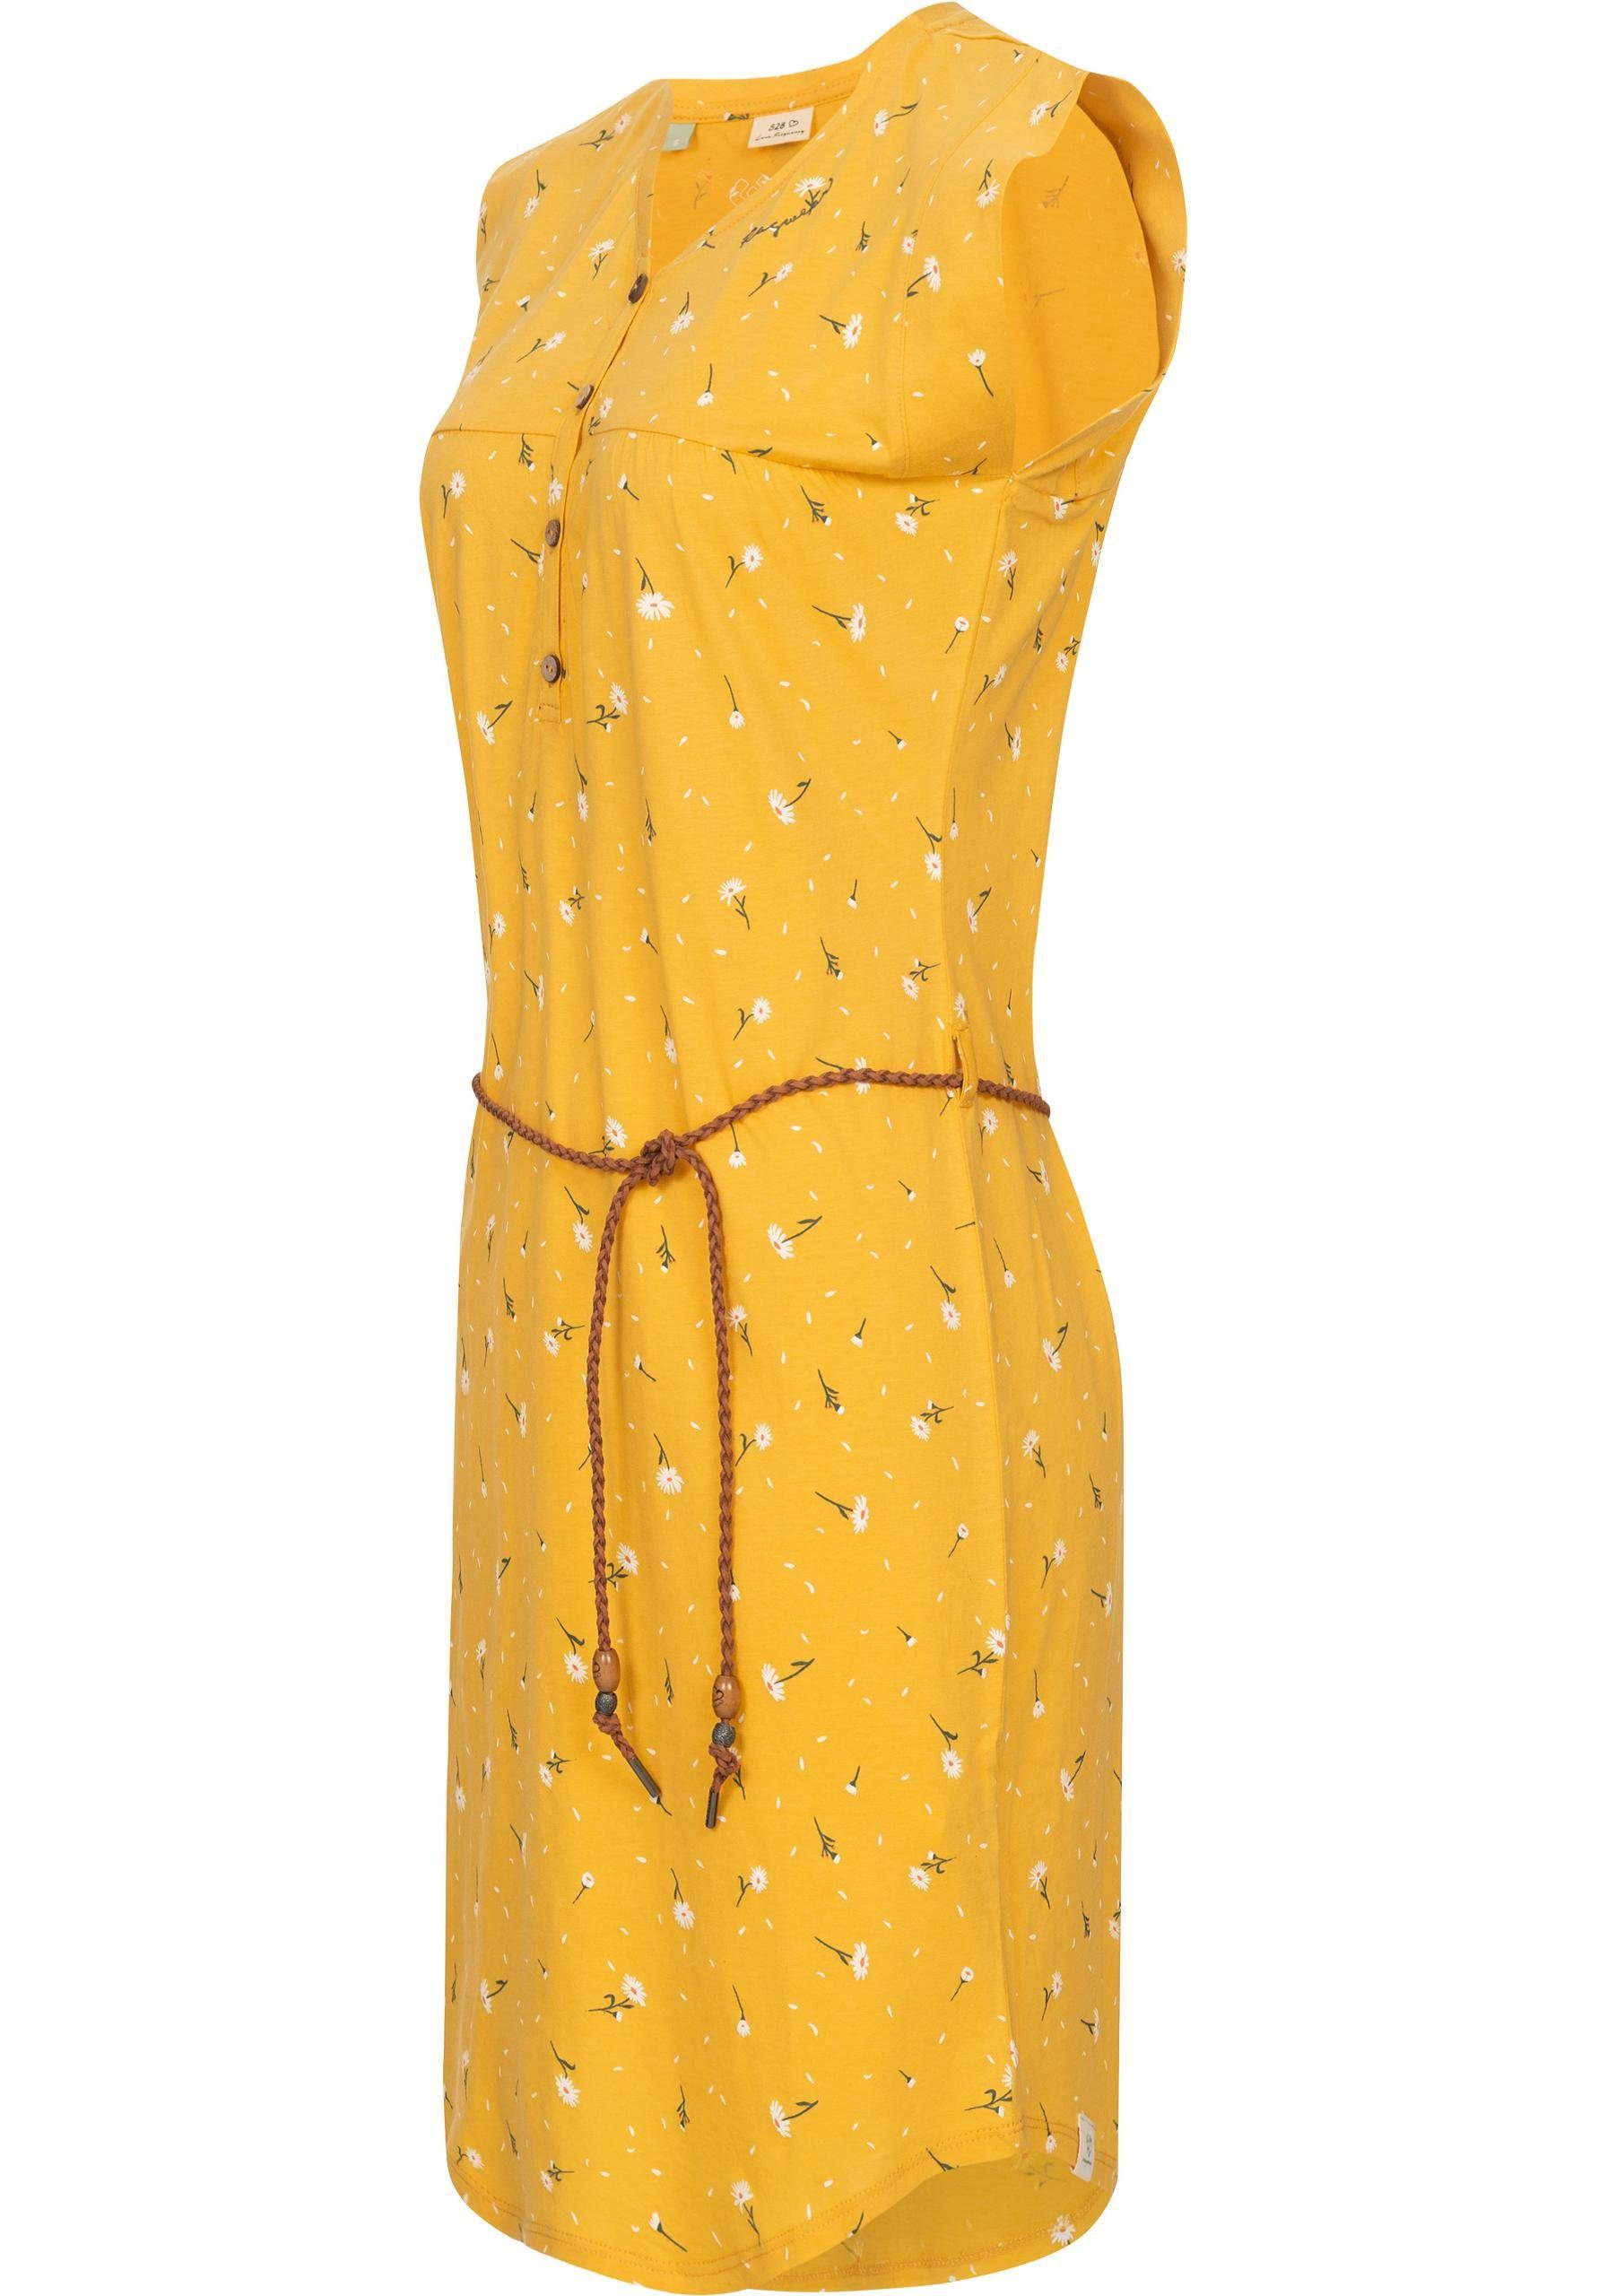 Ragwear Sommerkleid Zofka Dress Organic leichtes Jersey Kleid mit  sommerlichem Print, Hochwertige Qualität und Verarbeitung, fällt locker  leicht